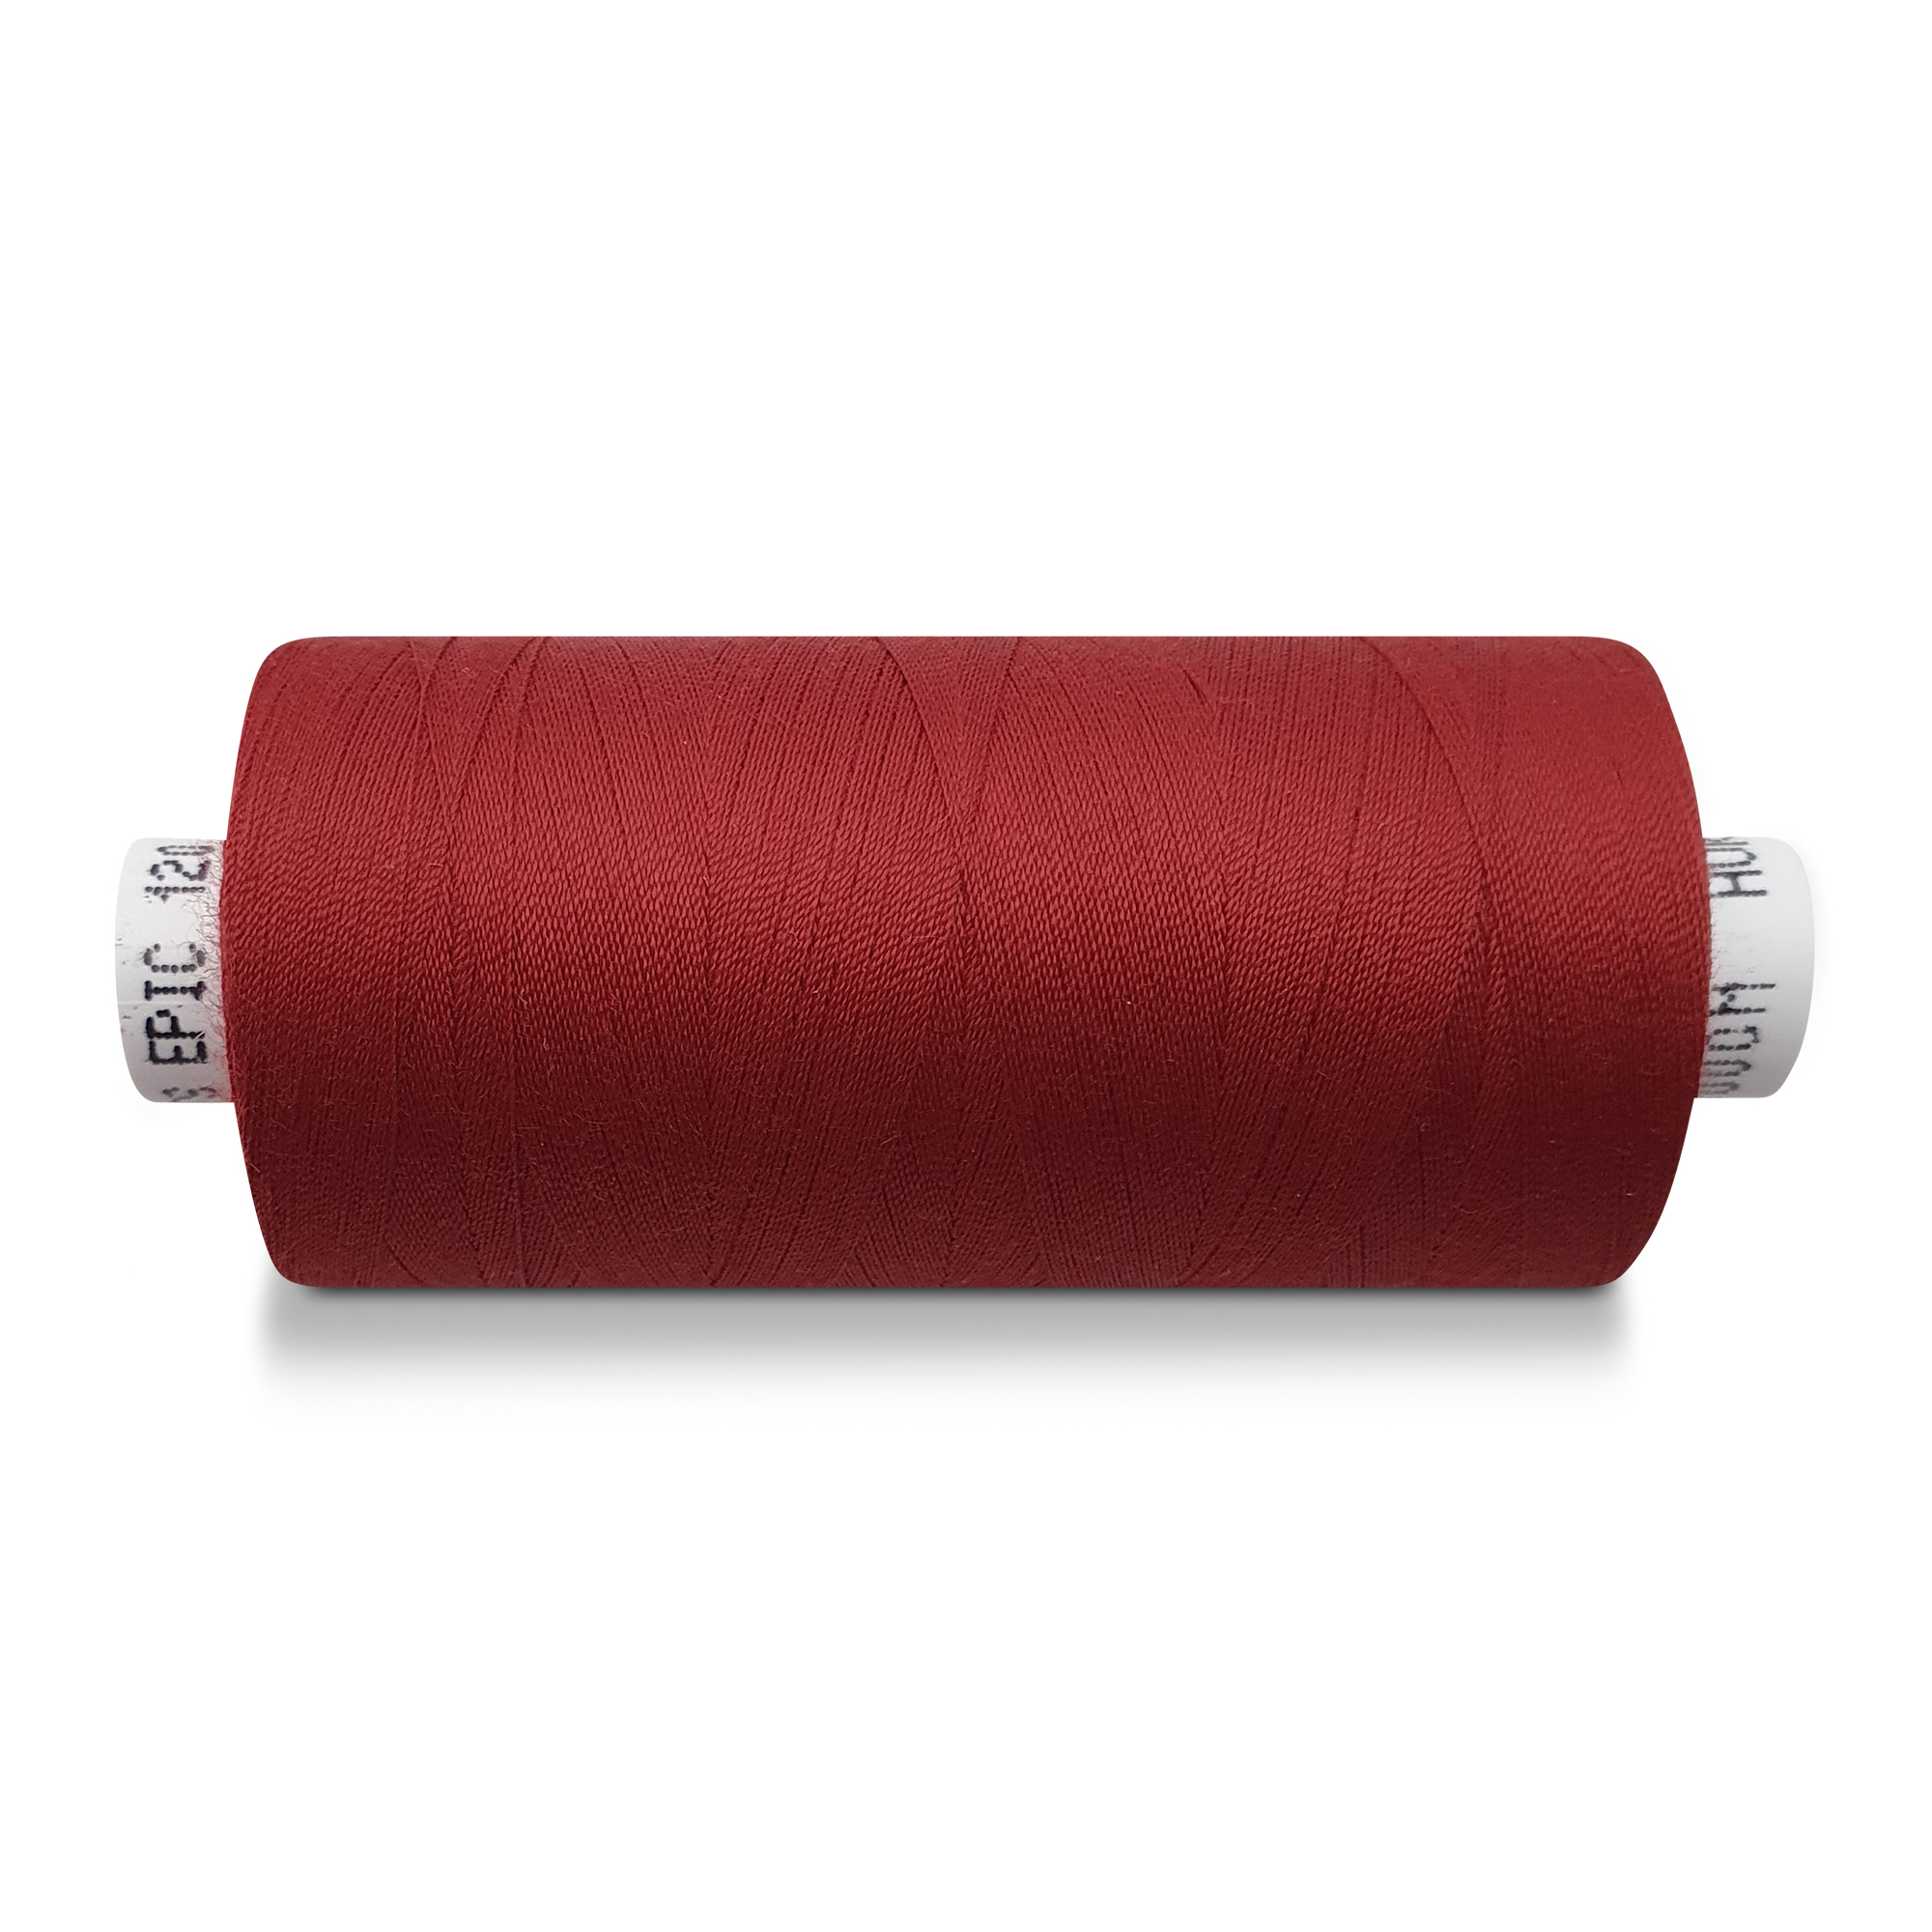 Sewing thread big, 5000m, dark red